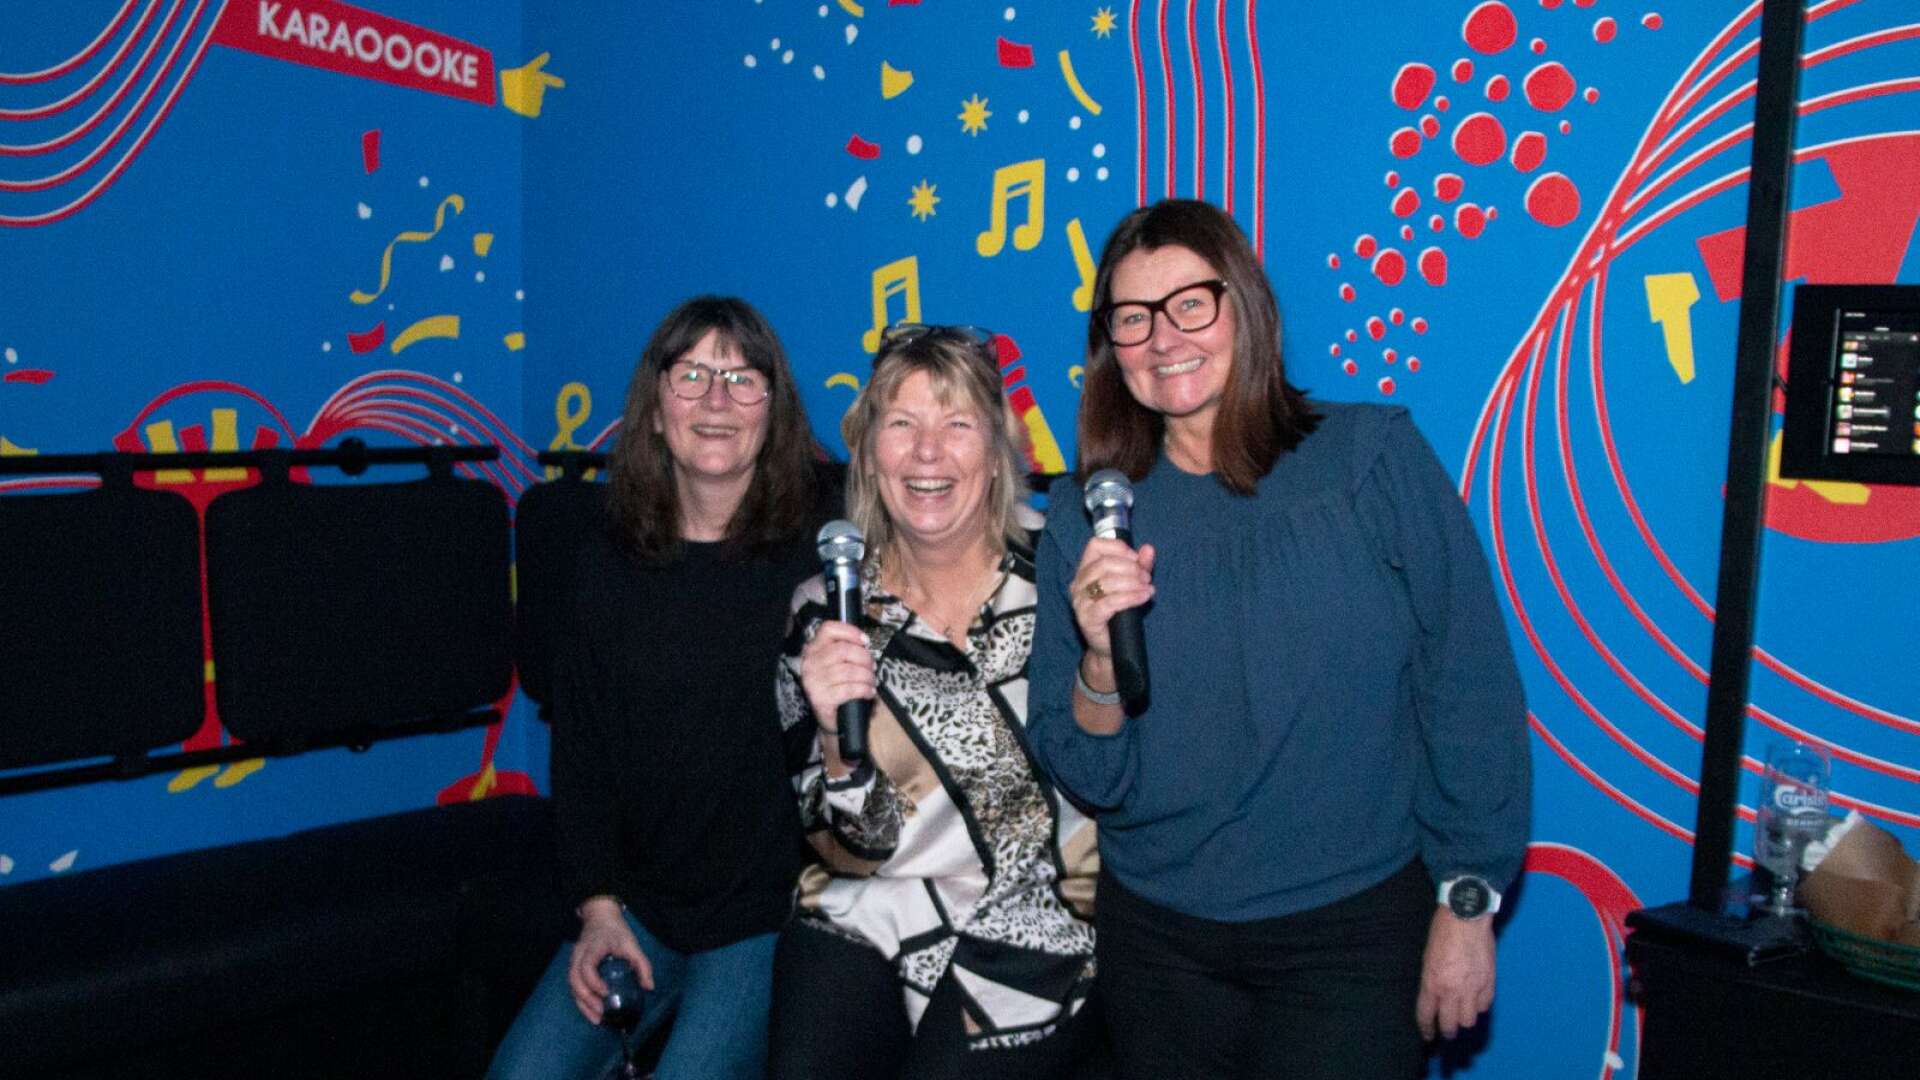 Helen Karlsson, Madelene Brunzell och Malin Broberg är tre kollegor som valt karaoke som after work.